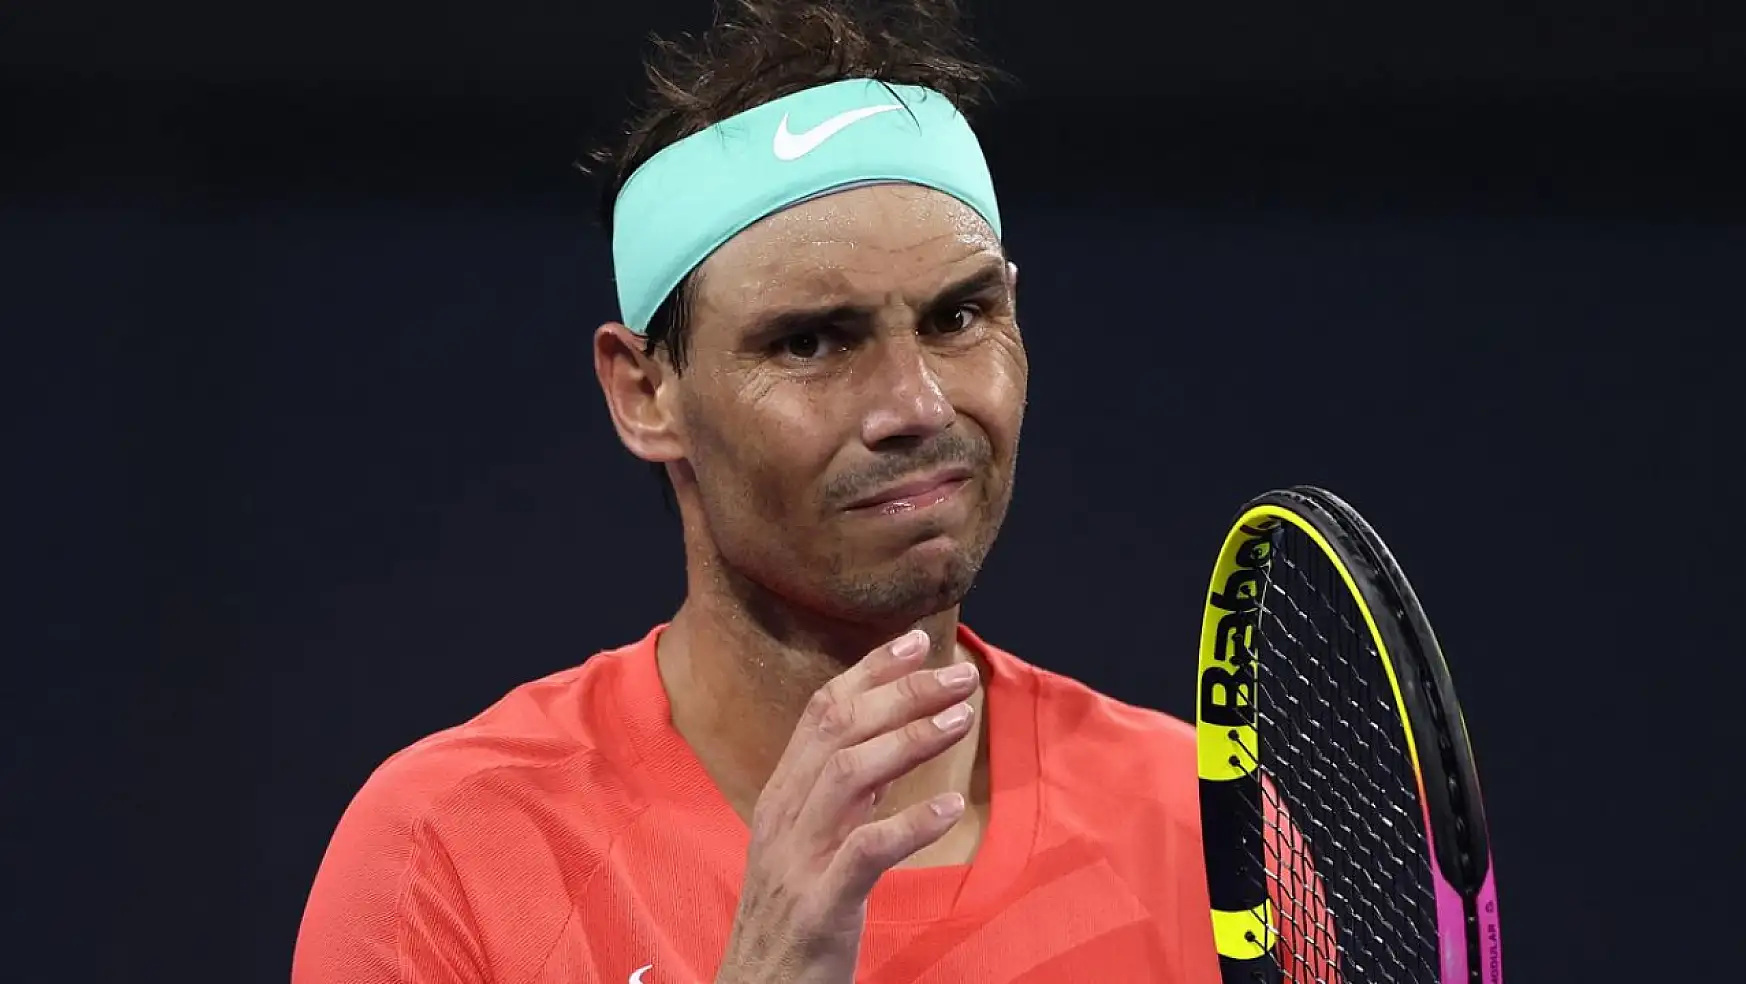 Rafael Nadal turnuvadan çekilme kararı aldı